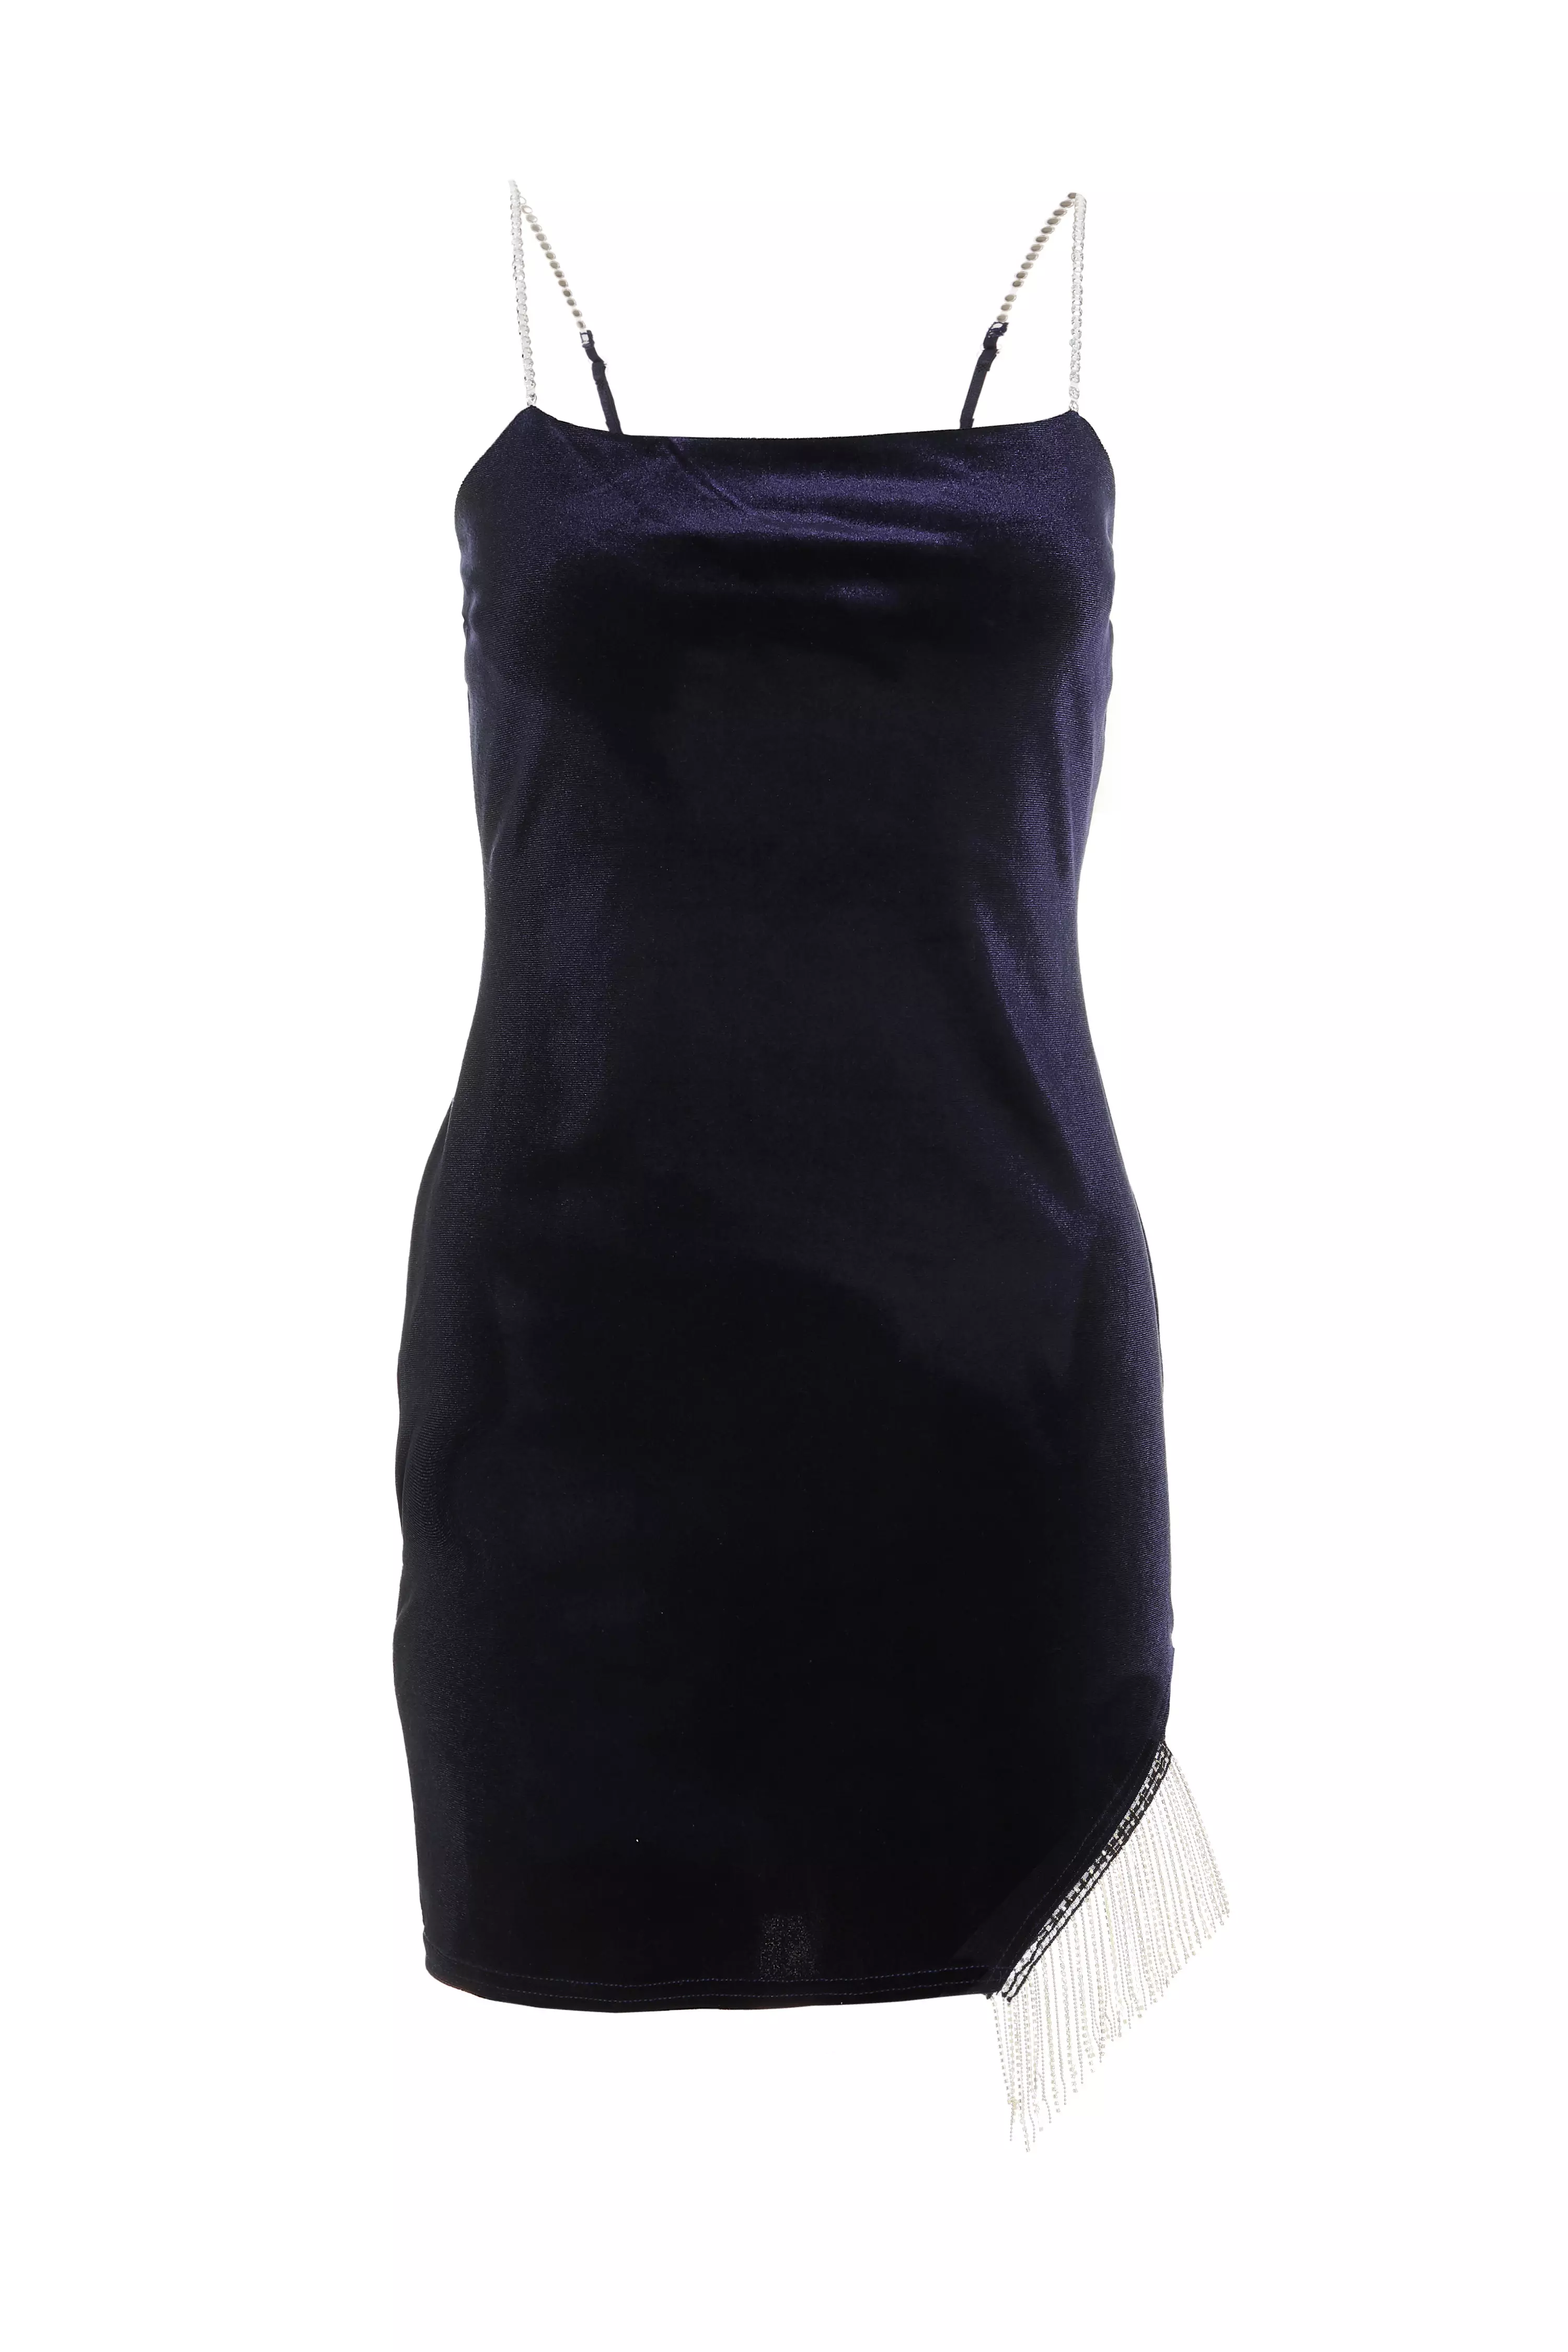 Blue Velvet Diamante Trim Mini Dress - QUIZ Clothing